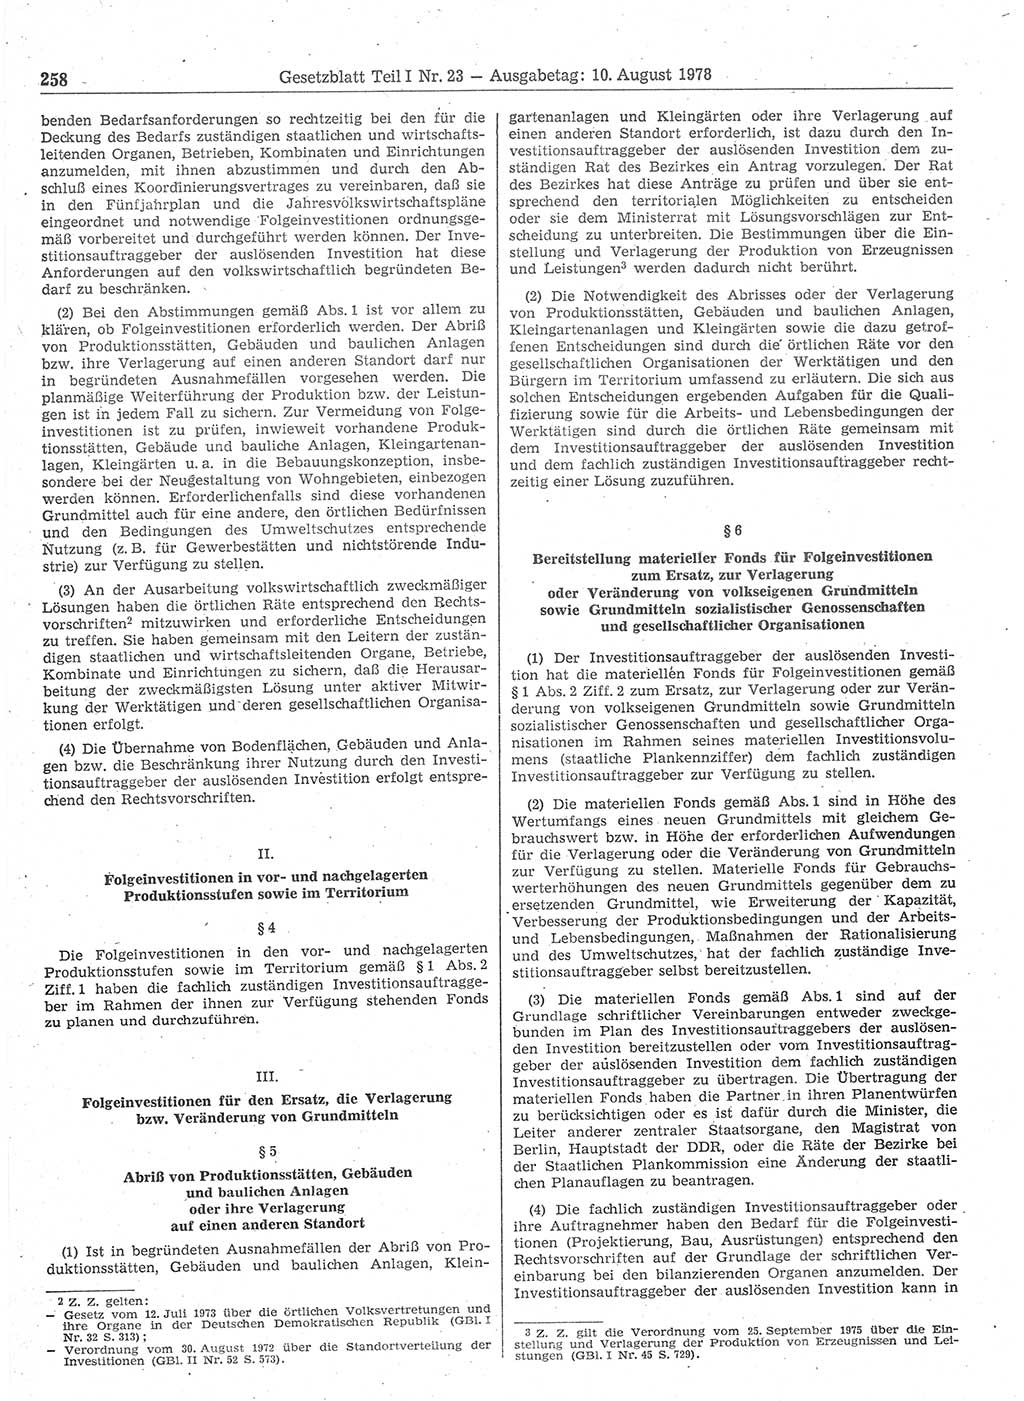 Gesetzblatt (GBl.) der Deutschen Demokratischen Republik (DDR) Teil Ⅰ 1978, Seite 258 (GBl. DDR Ⅰ 1978, S. 258)